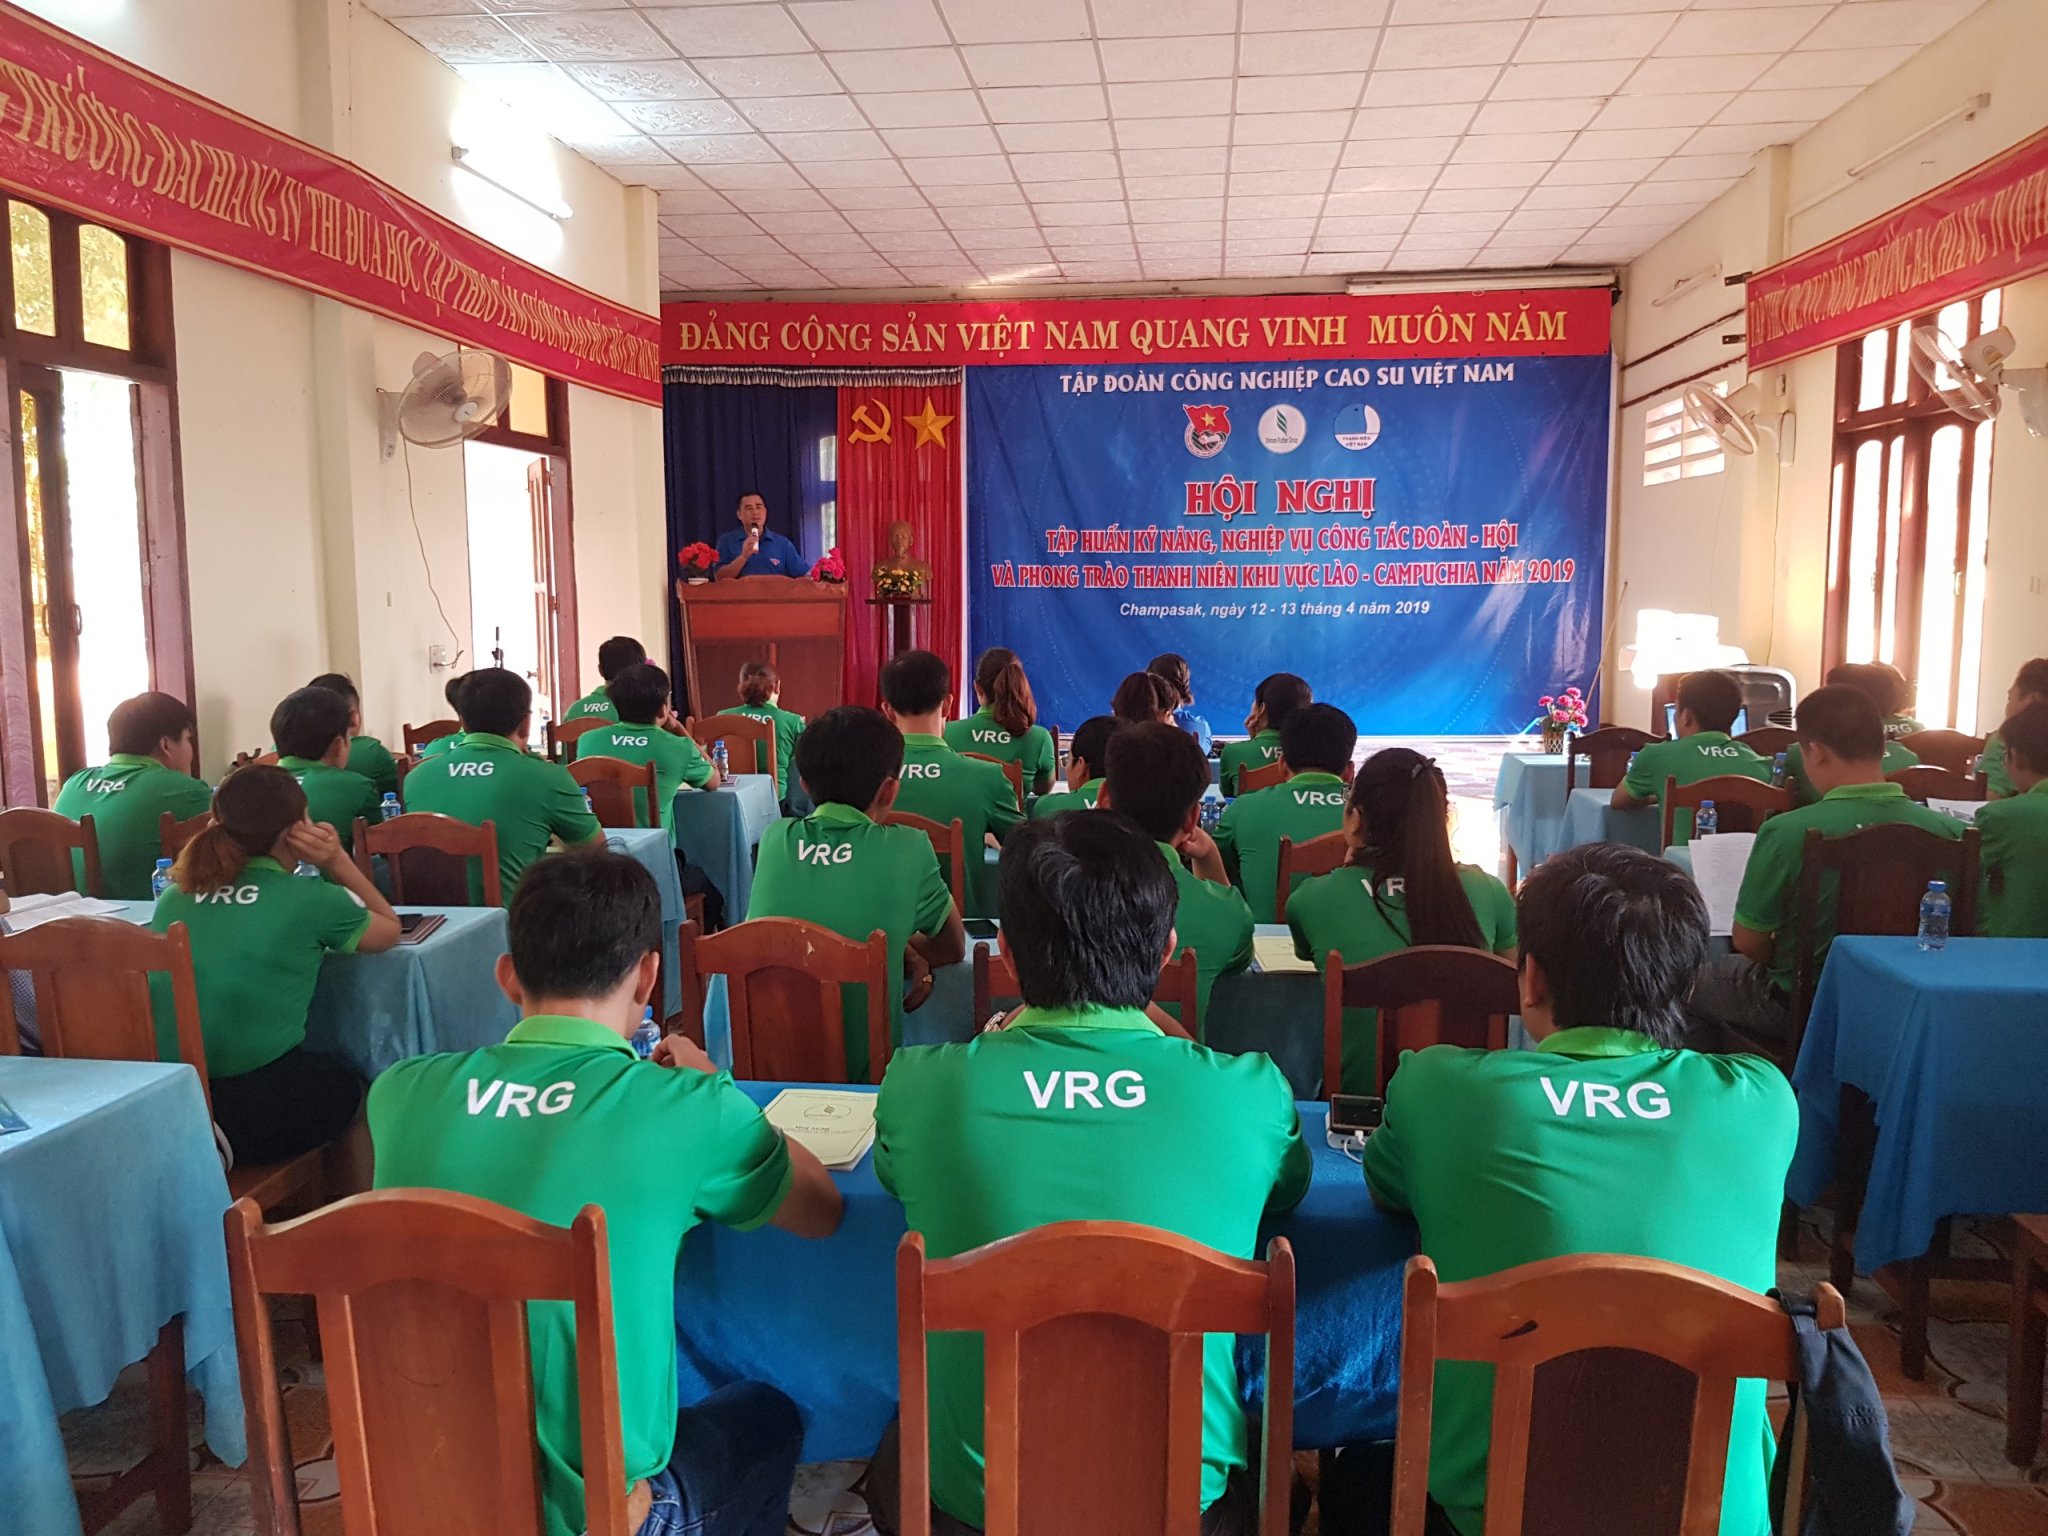 Hội nghị tập huấn kỹ năng, nghiệp vụ công tác Đoàn – Hội và phong trào thanh niên khu vực Lào và Campuchia năm 2019 do Đoàn VRG tổ chức